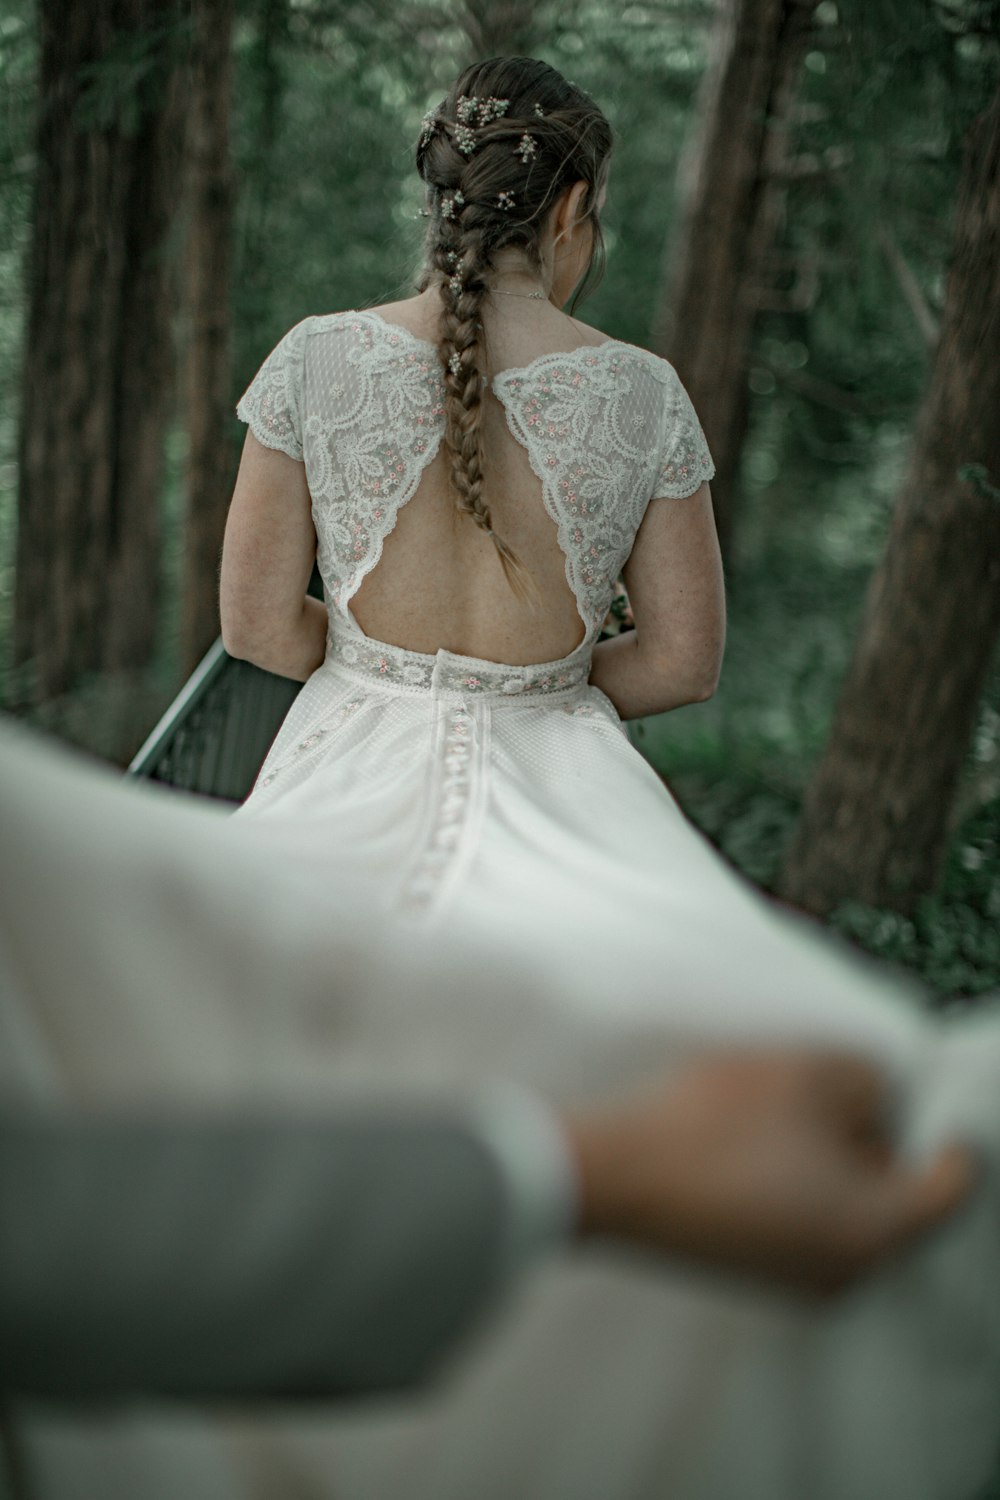 나무 근처에 서 있는 하얀 드레스를 입은 여자